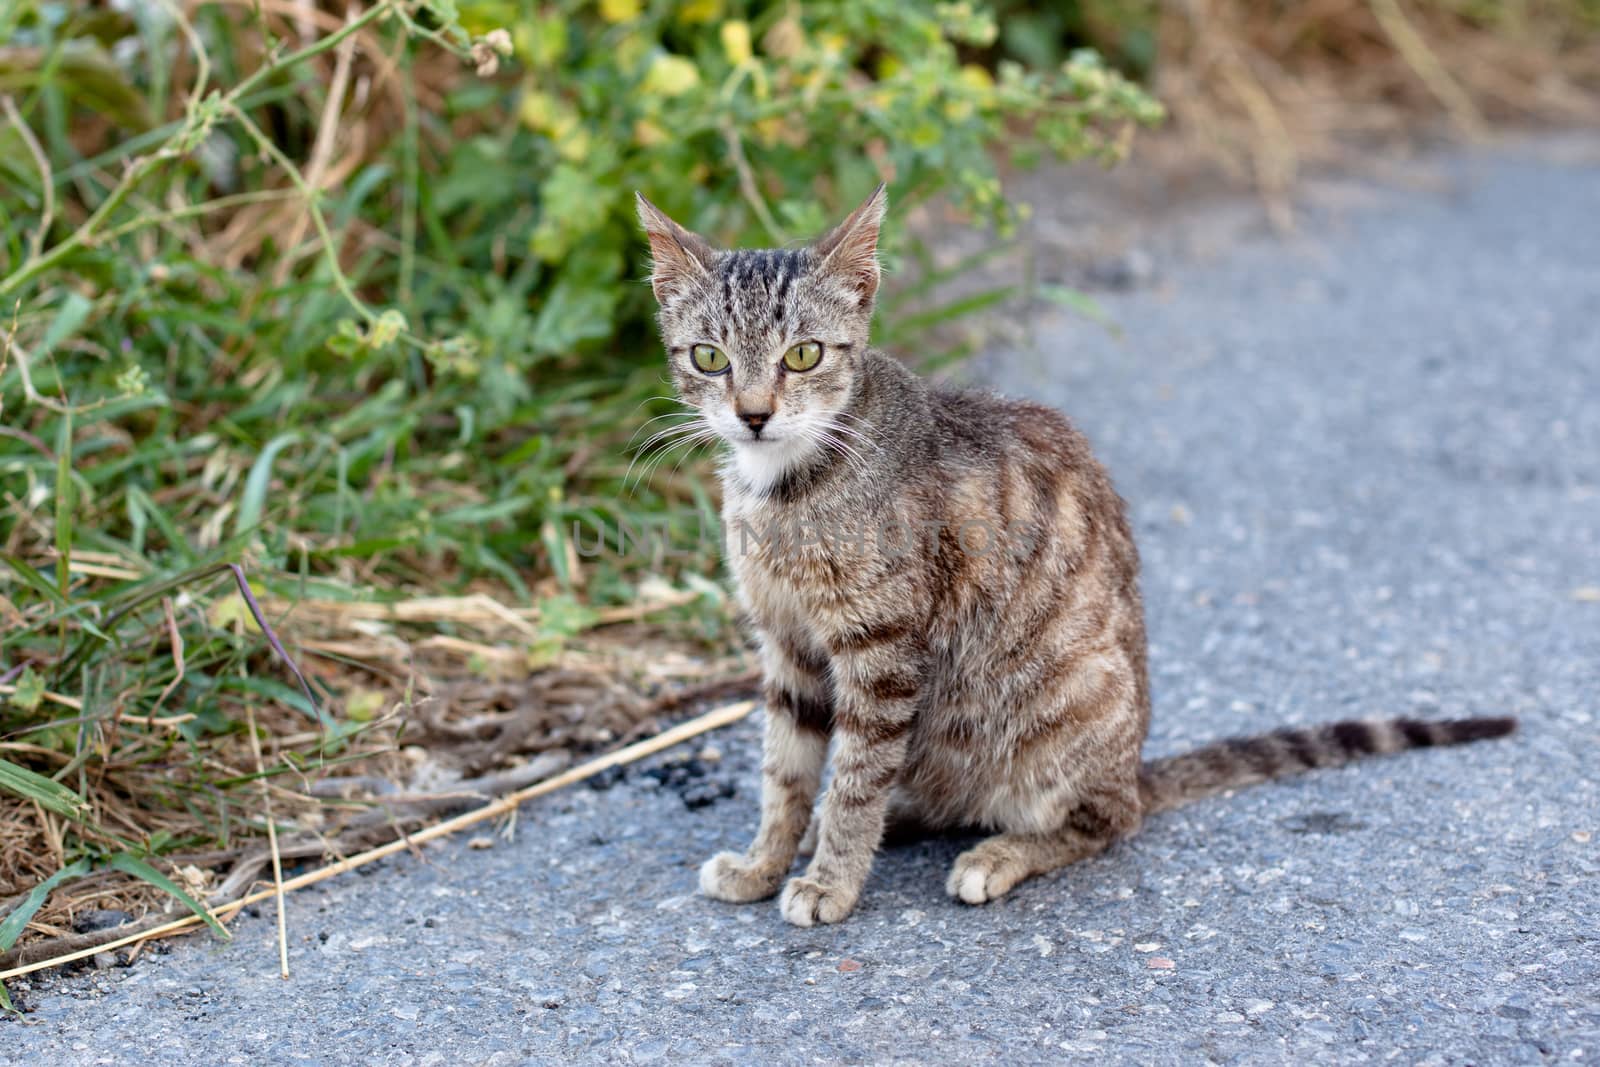 Outdoor cat by foaloce